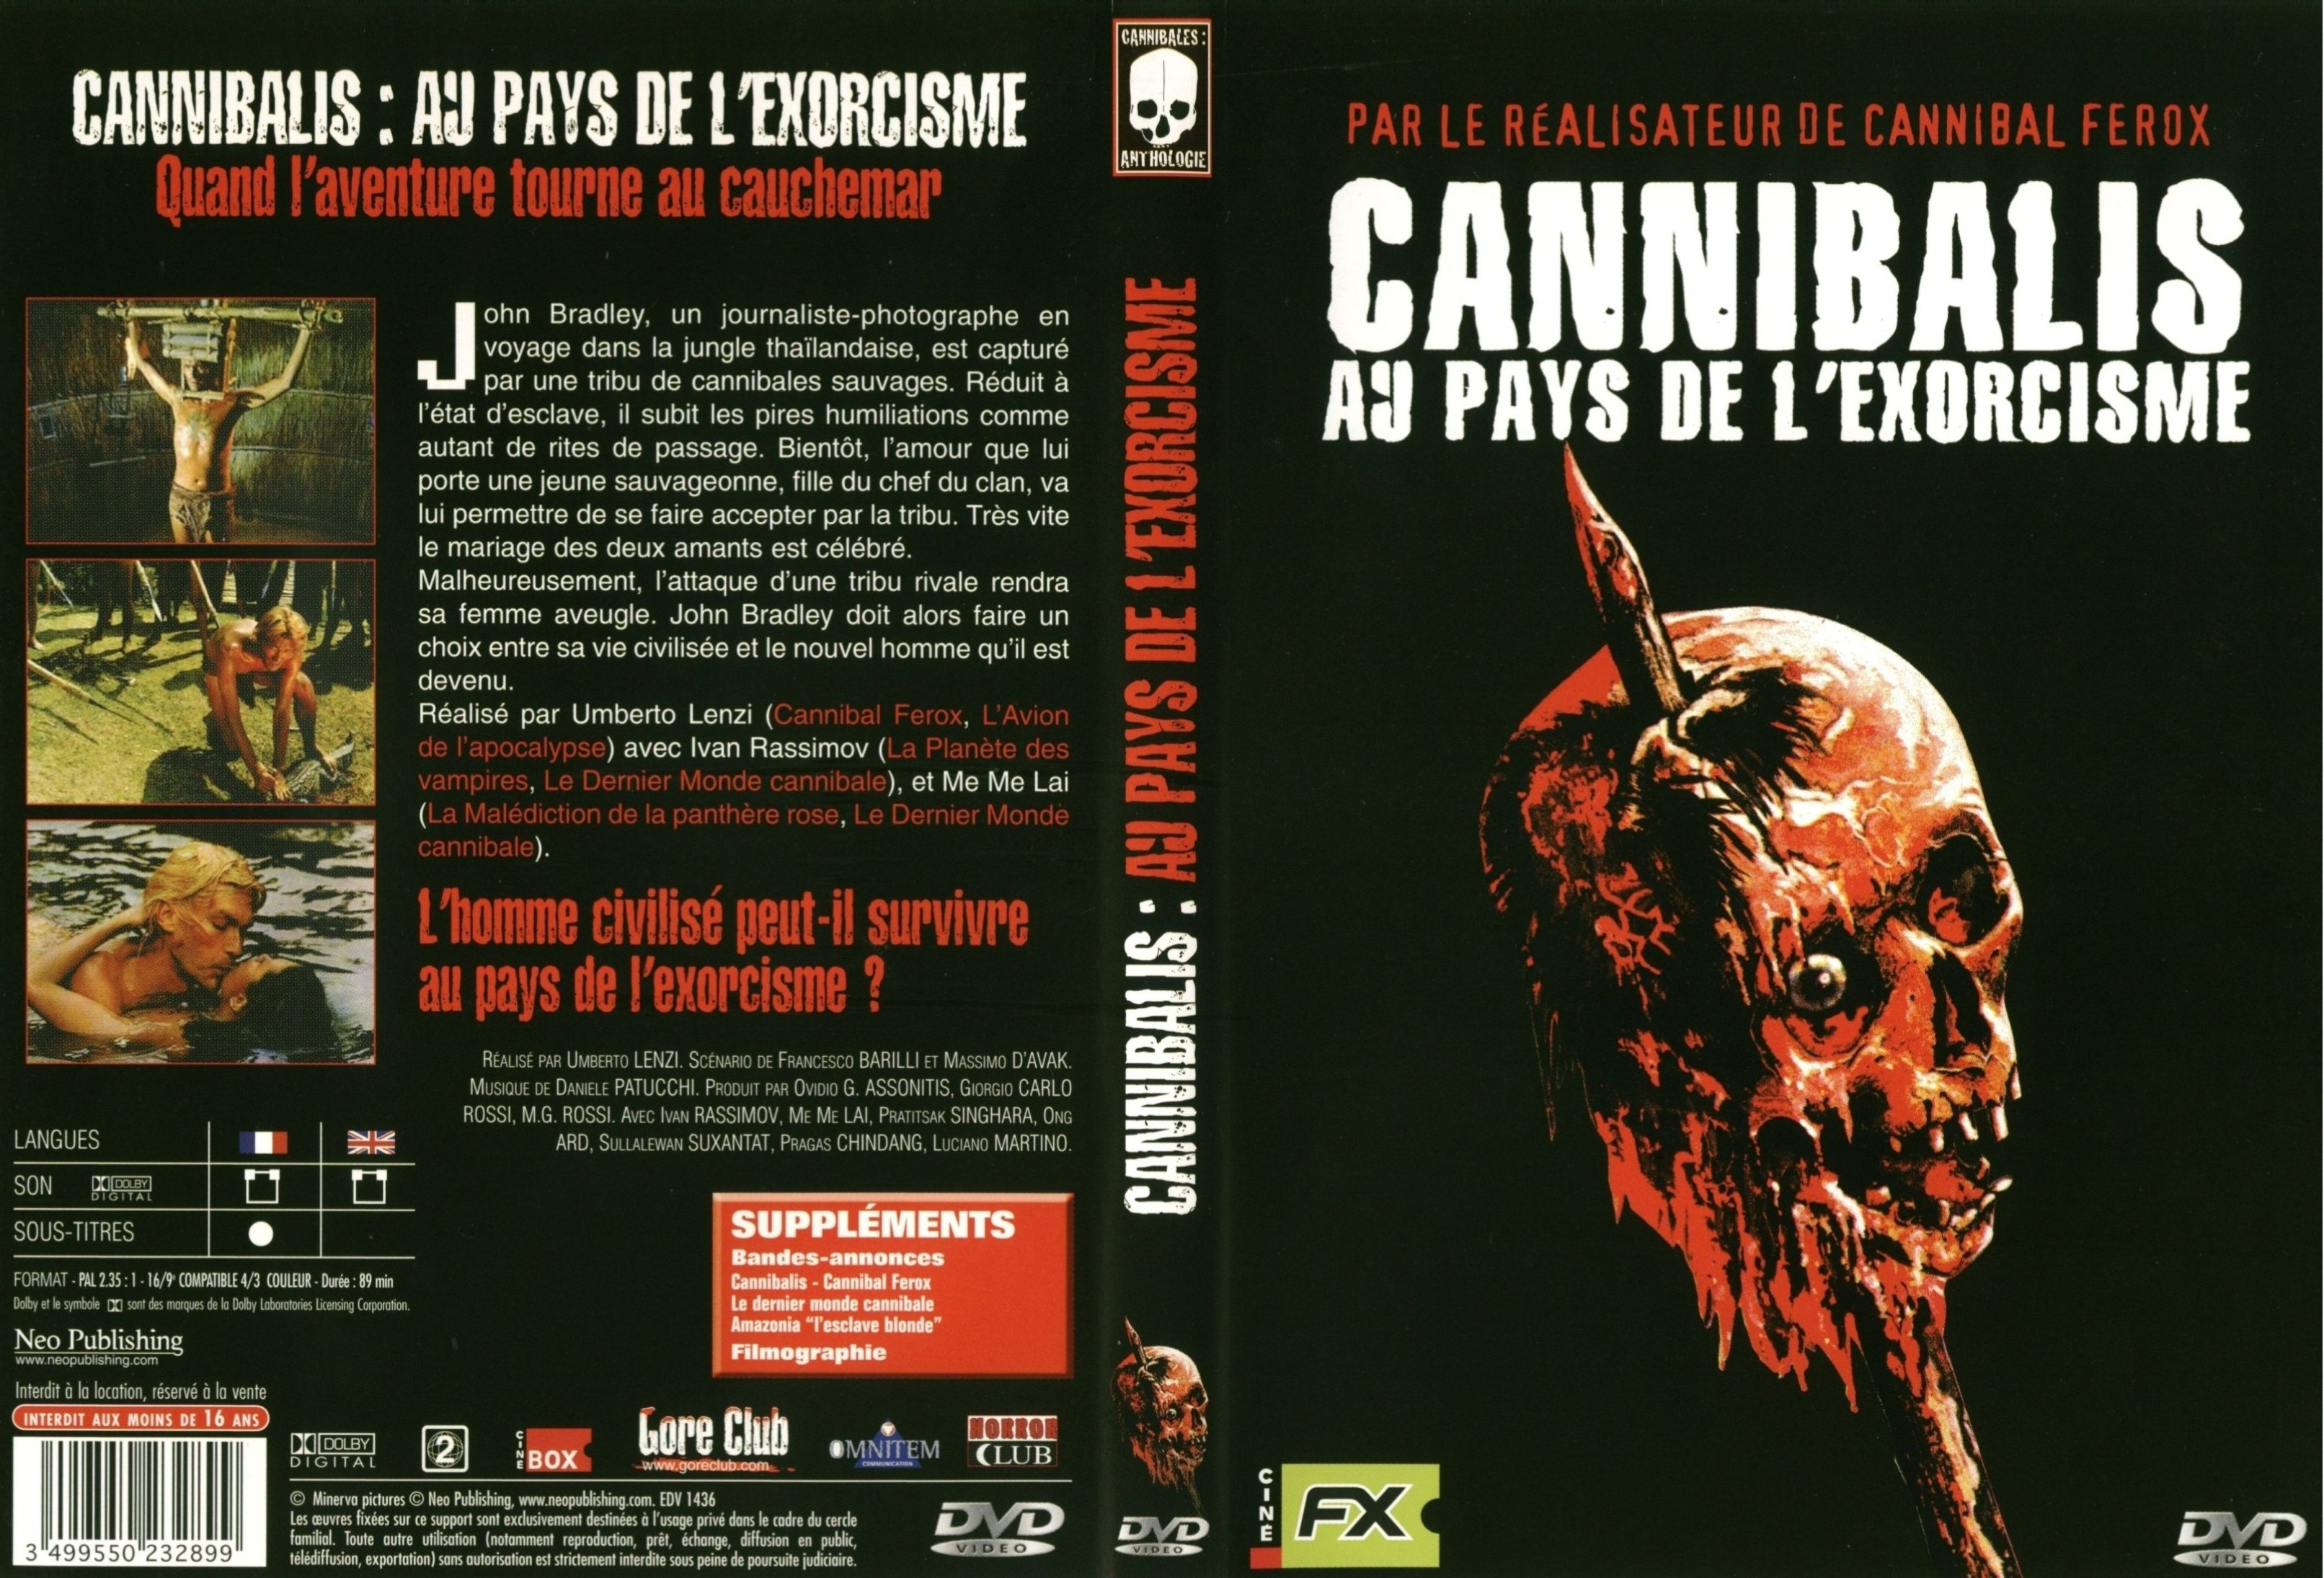 Jaquette DVD Cannibalis au pays de l